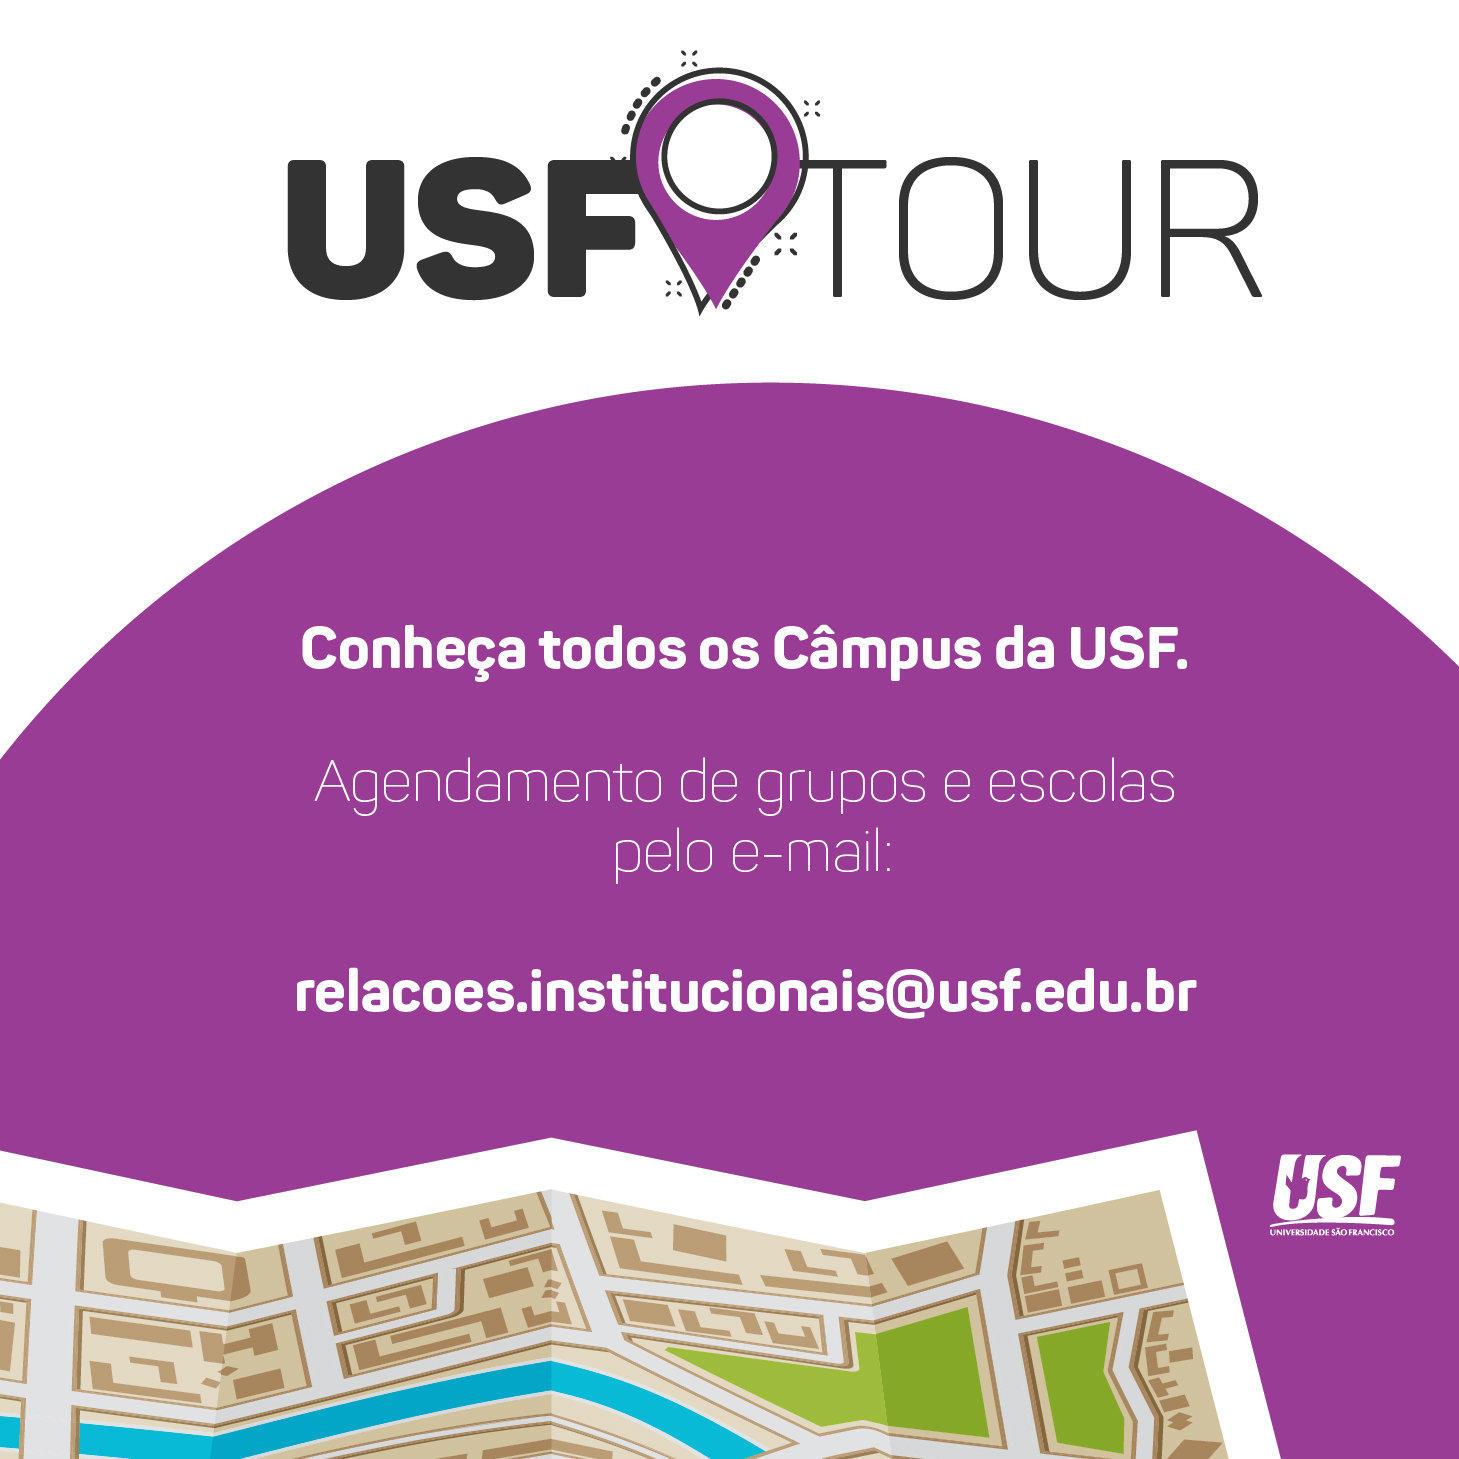 Interessados em conhecer a USF podem participar do USF Tour 